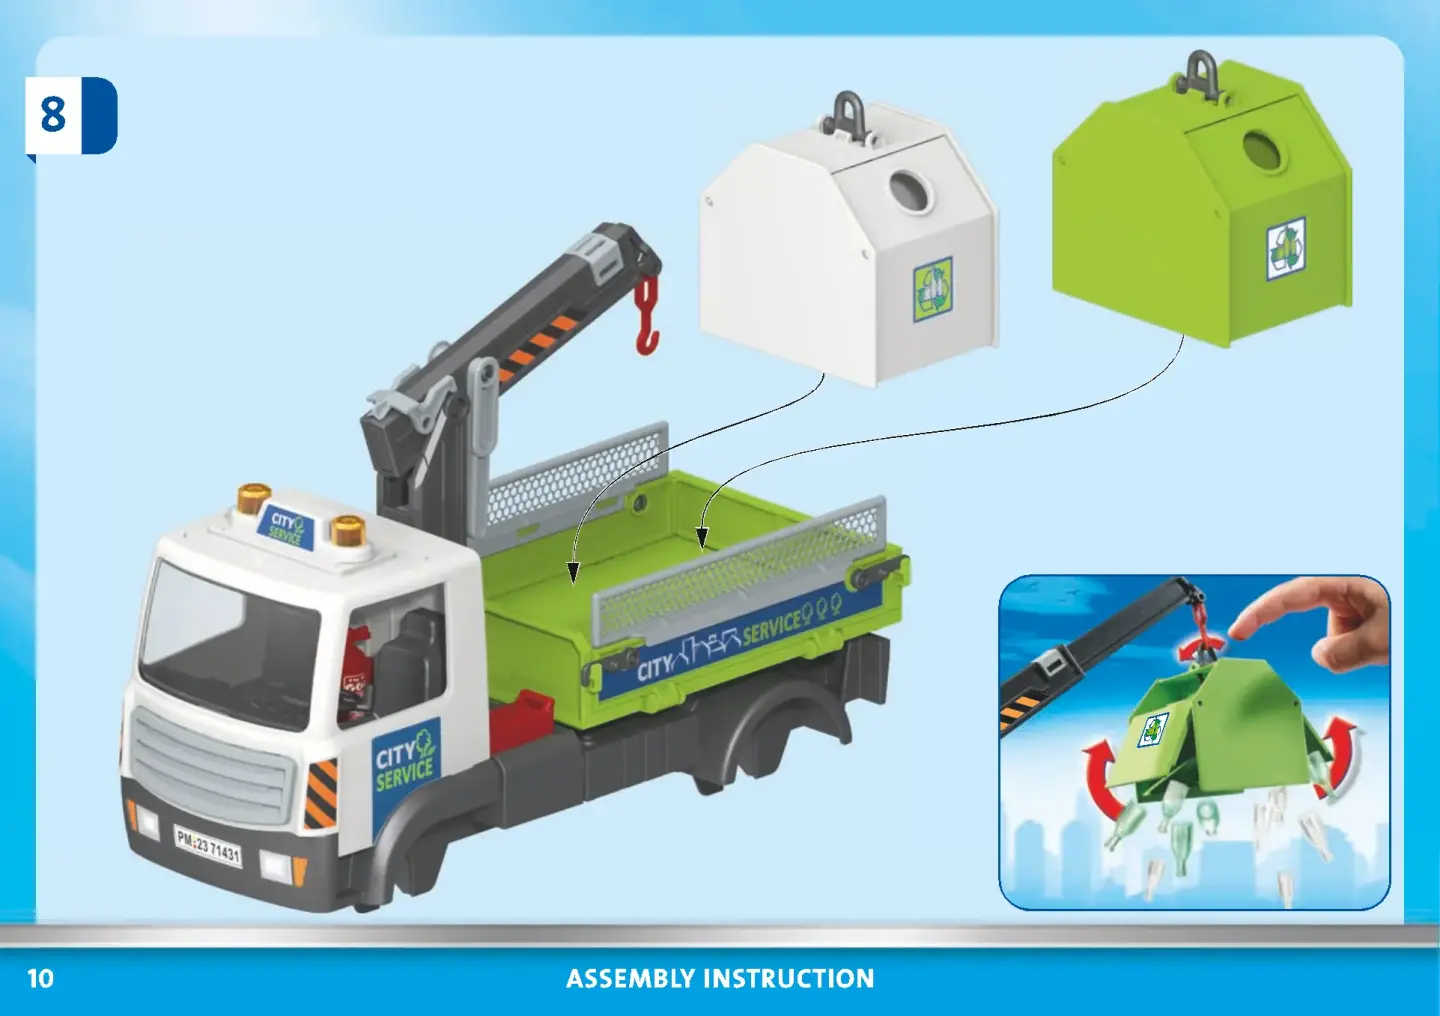 Playmobil® - CITY ACTION - 71431 «Camion-grue de recyclage de verre»